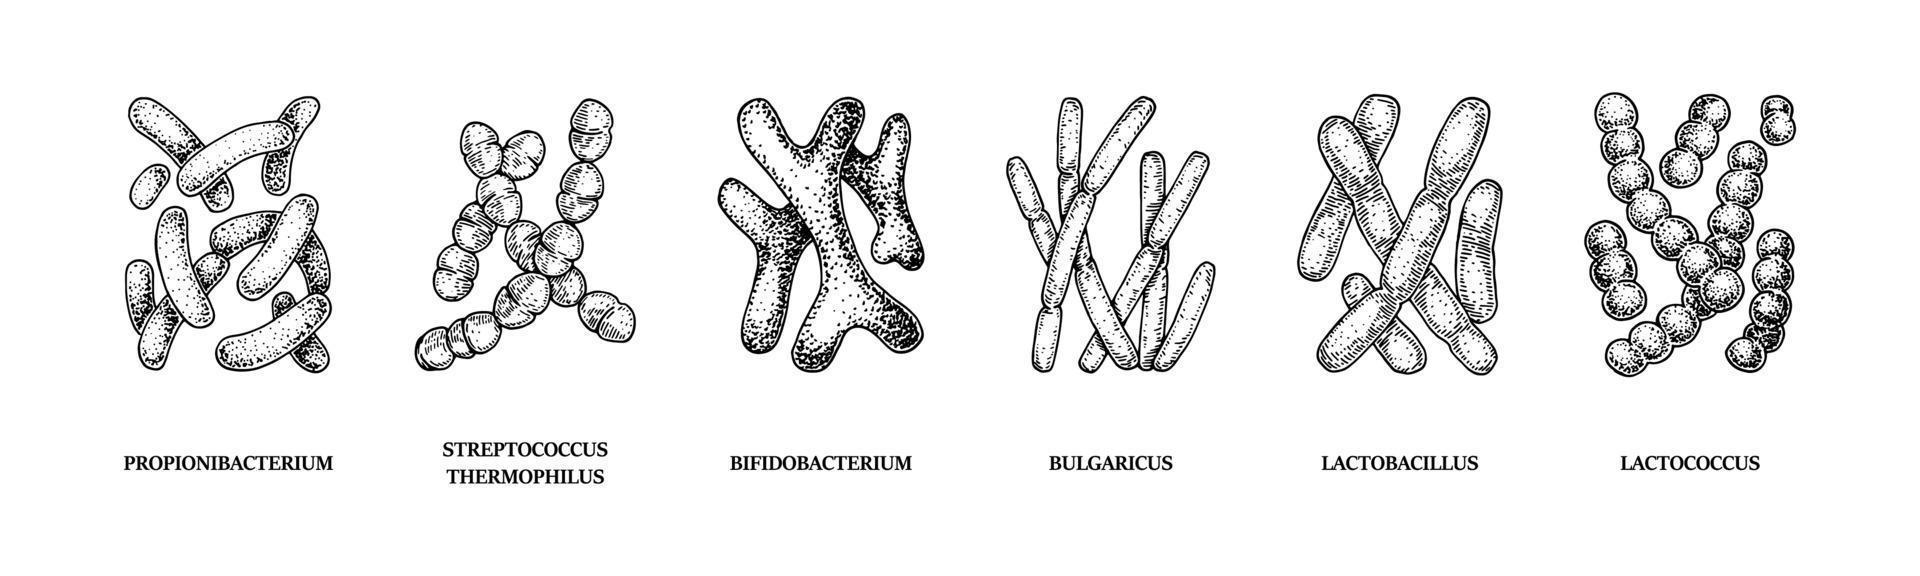 uppsättning handritade probiotika bakterier lactococcus, lactobacillus, bulgaricus, bifidobacterium, propionibacterium, streptococcus. vektor illustration i skiss stil